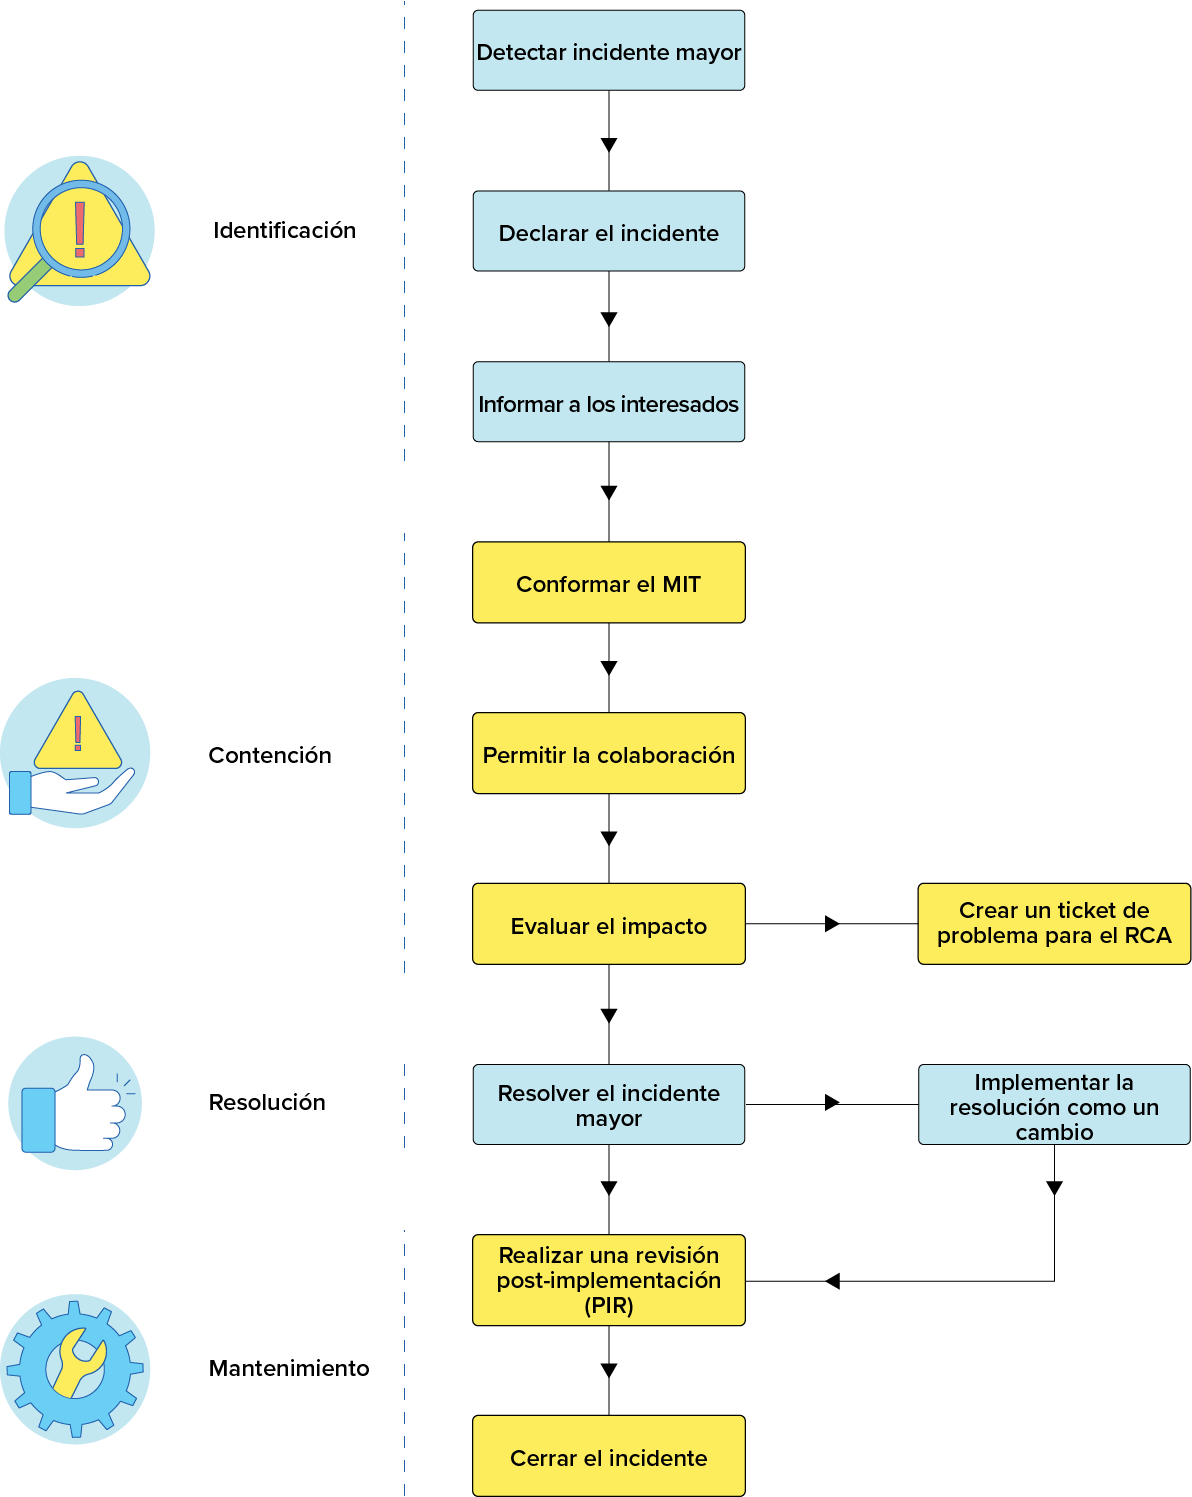 Diagrama workflow proceso gestión de incidentes mayores de TI